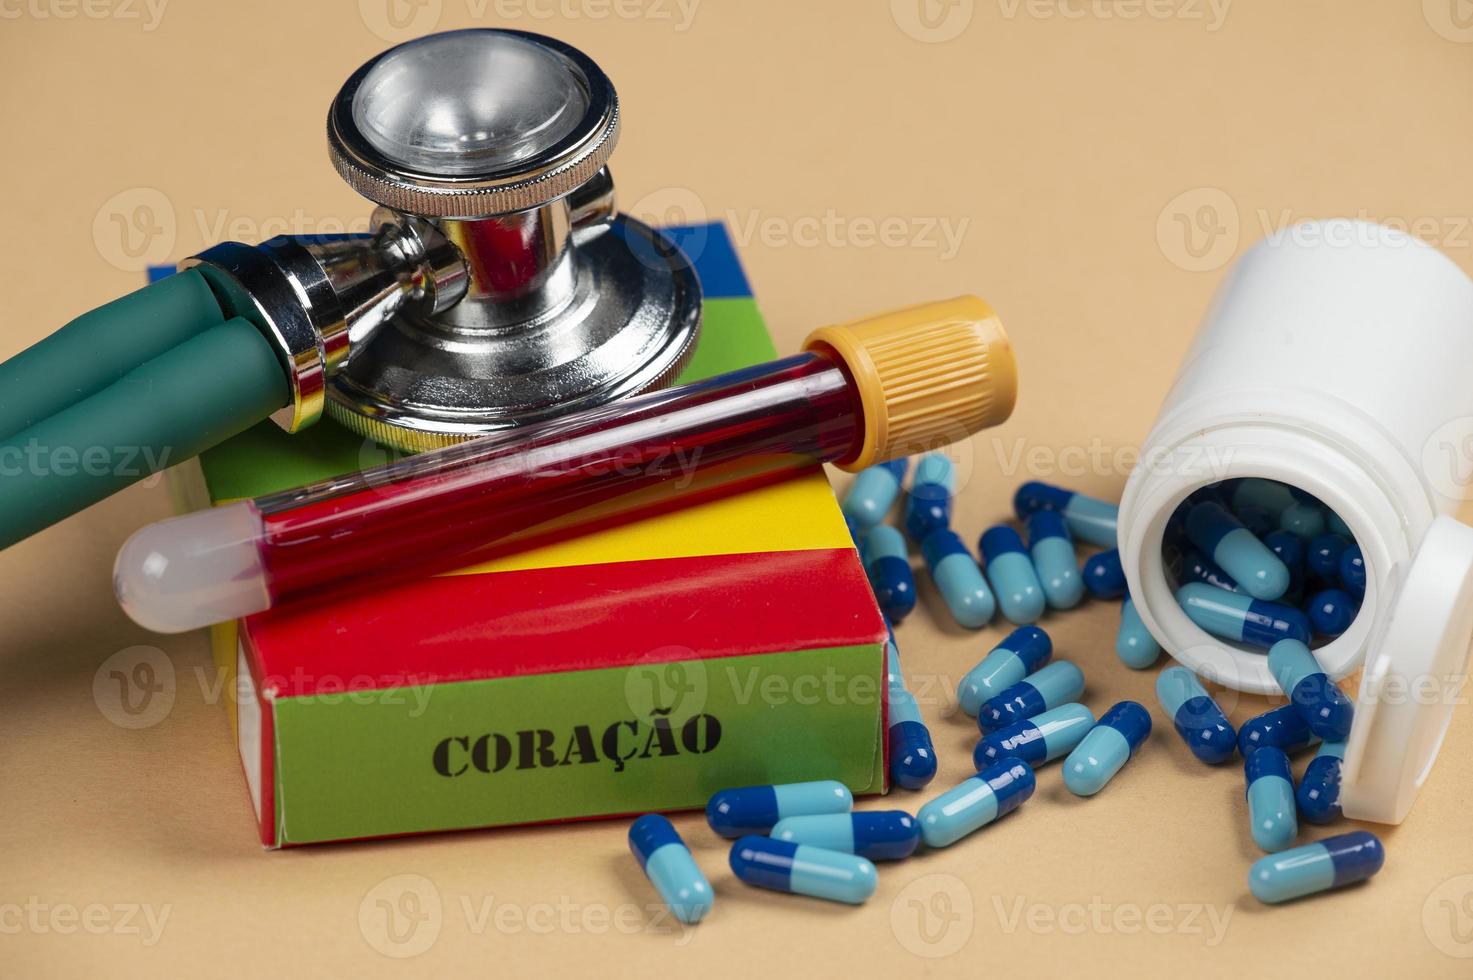 caja de medicamentos falsos con el nombre de la enfermedad coracao y un glucómetro. foto